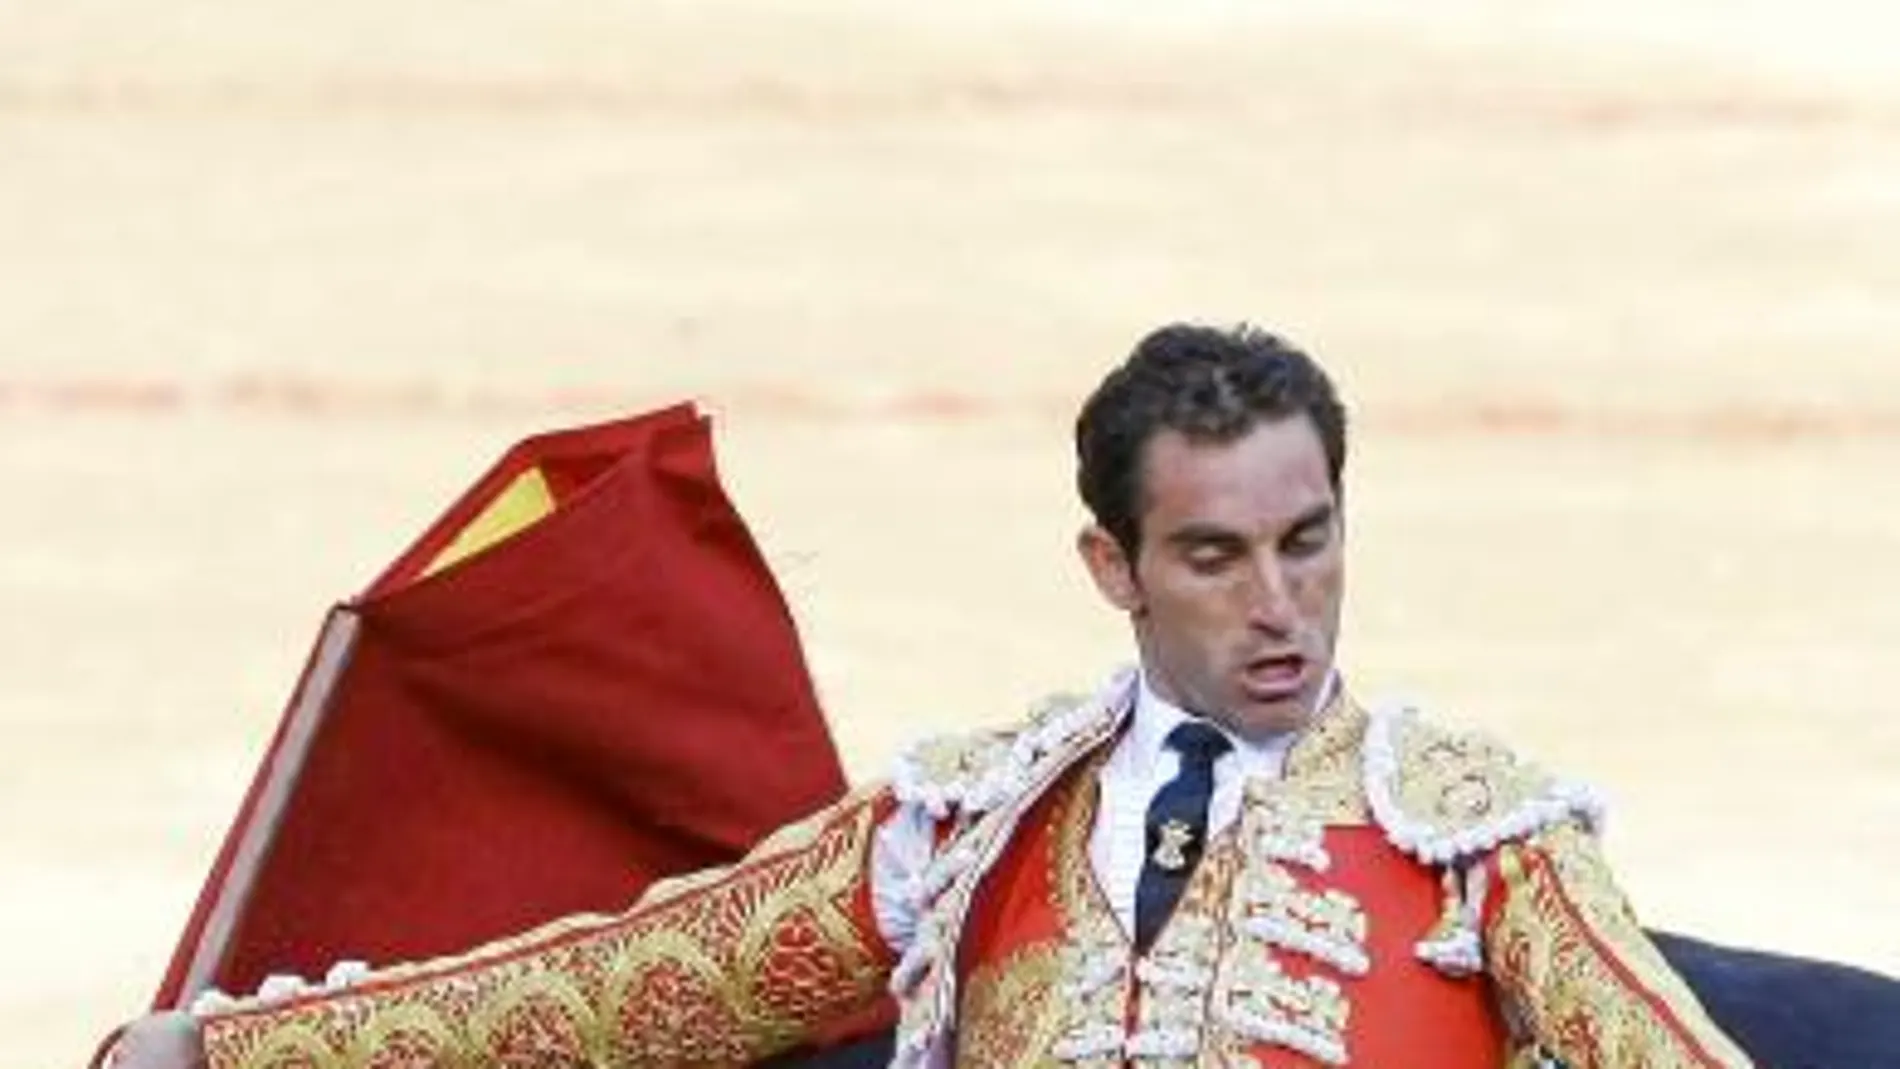 Cortés cortó sendas orejas para salir de Burgos en volandas